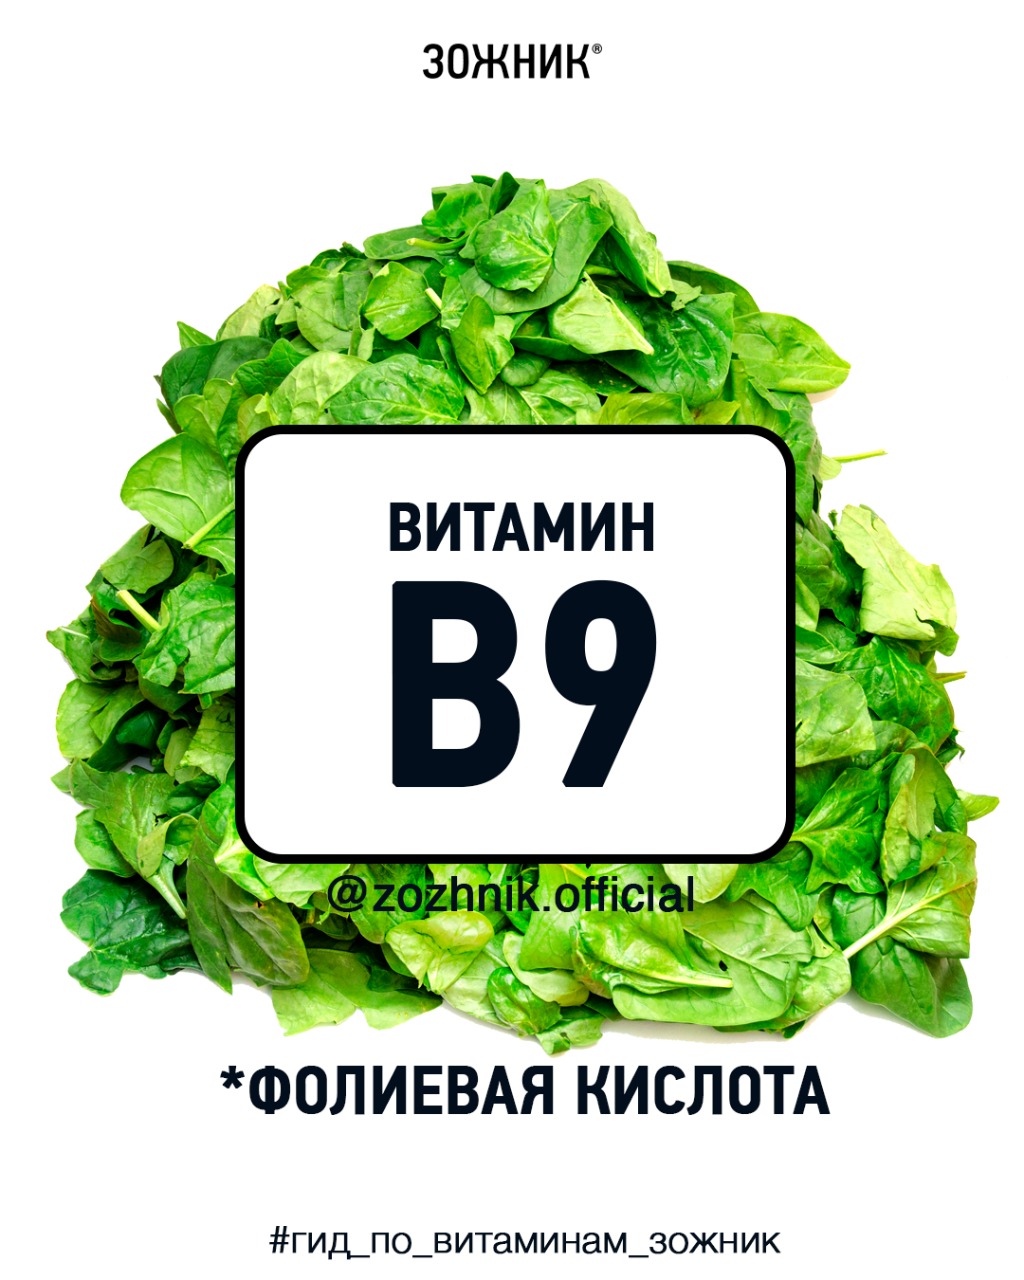 Витамин B9, он же “фолиевая кислота”. Энциклопедия в 10 слайдах 